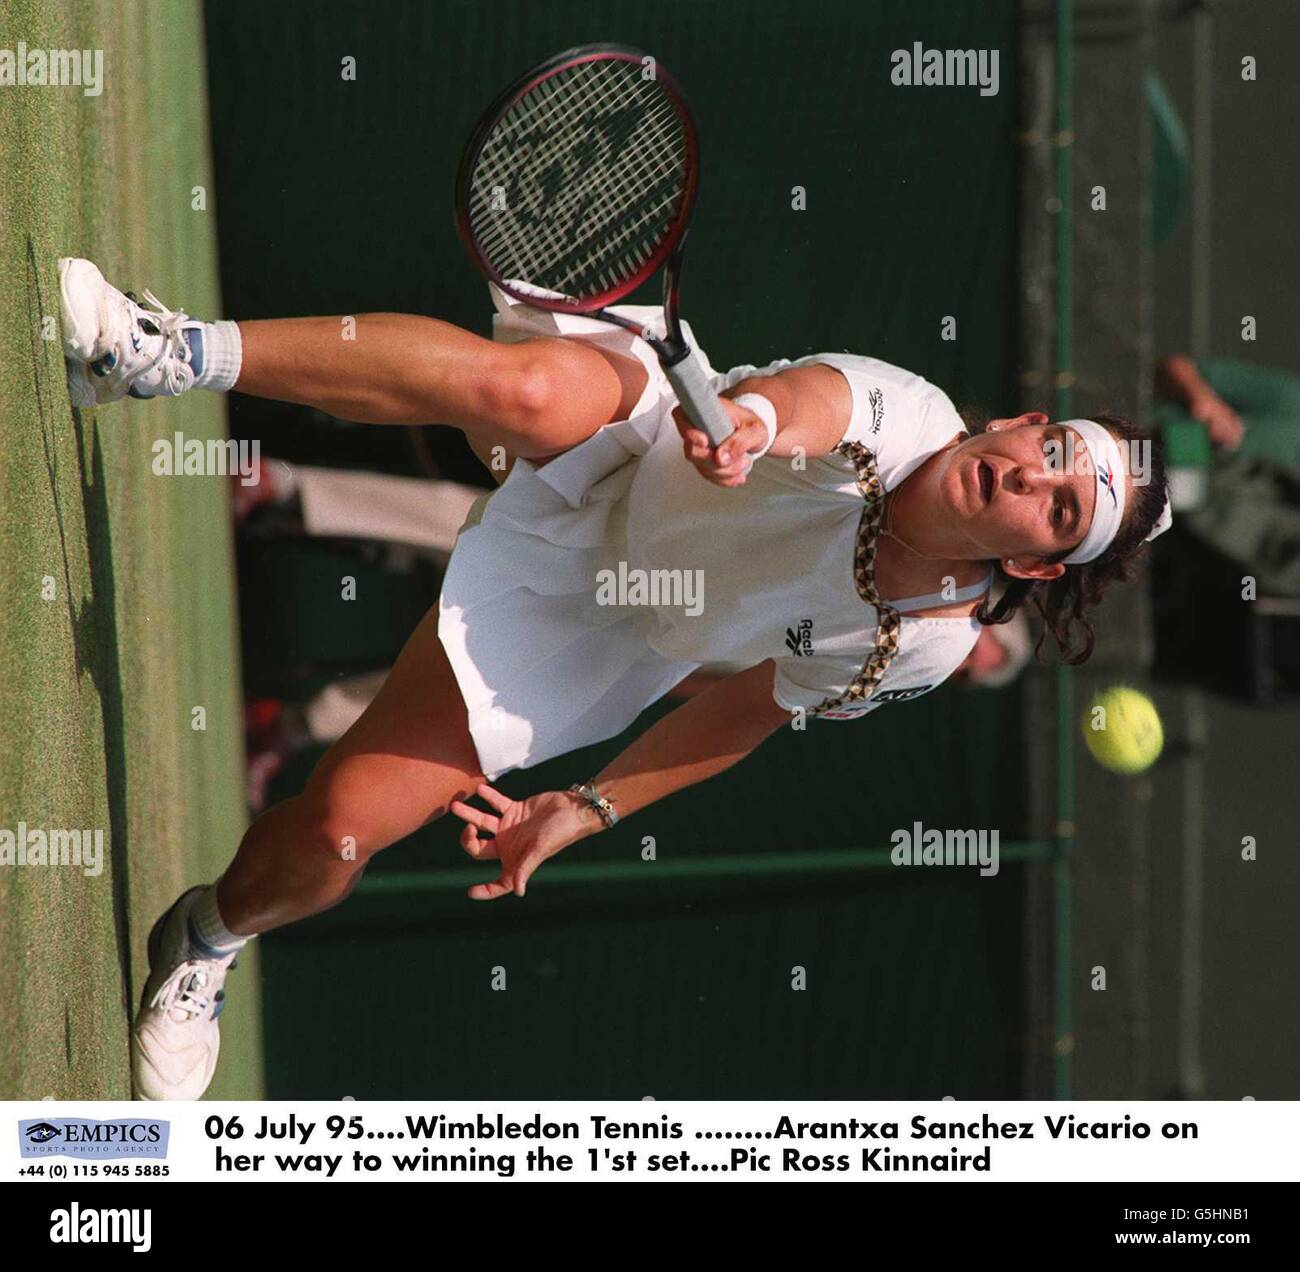 06 juillet 95.Wimbledon tennis, Arantxa Sanchez Vicario sur le chemin de  gagner la 1ère série Photo Stock - Alamy